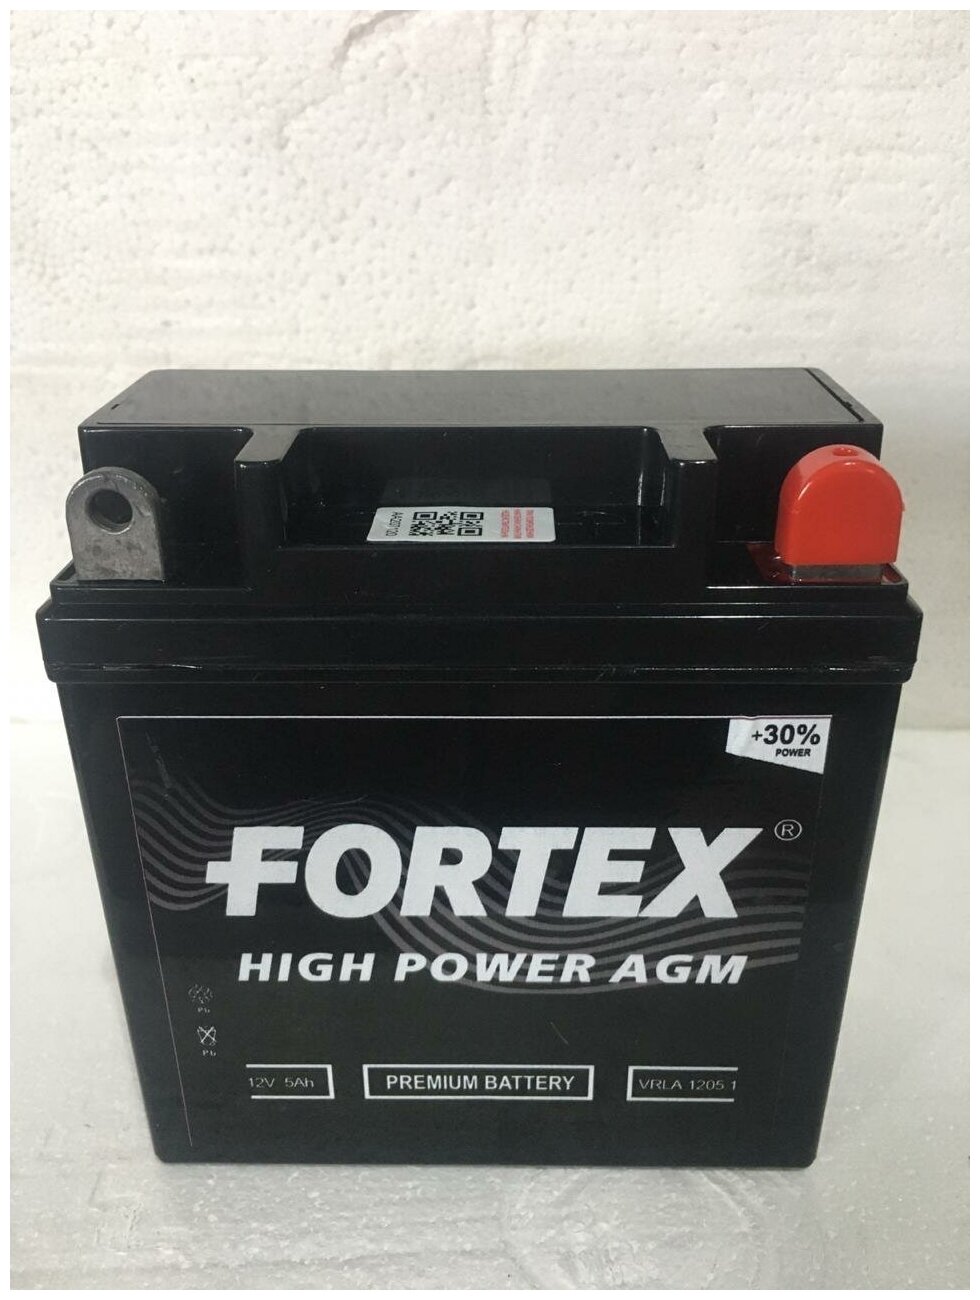 FORTEX VRLA 1205.1 АКБ Мото 12 В 5 А/ч о. п. Fortex AGM ток 65 120 х 60 х 130